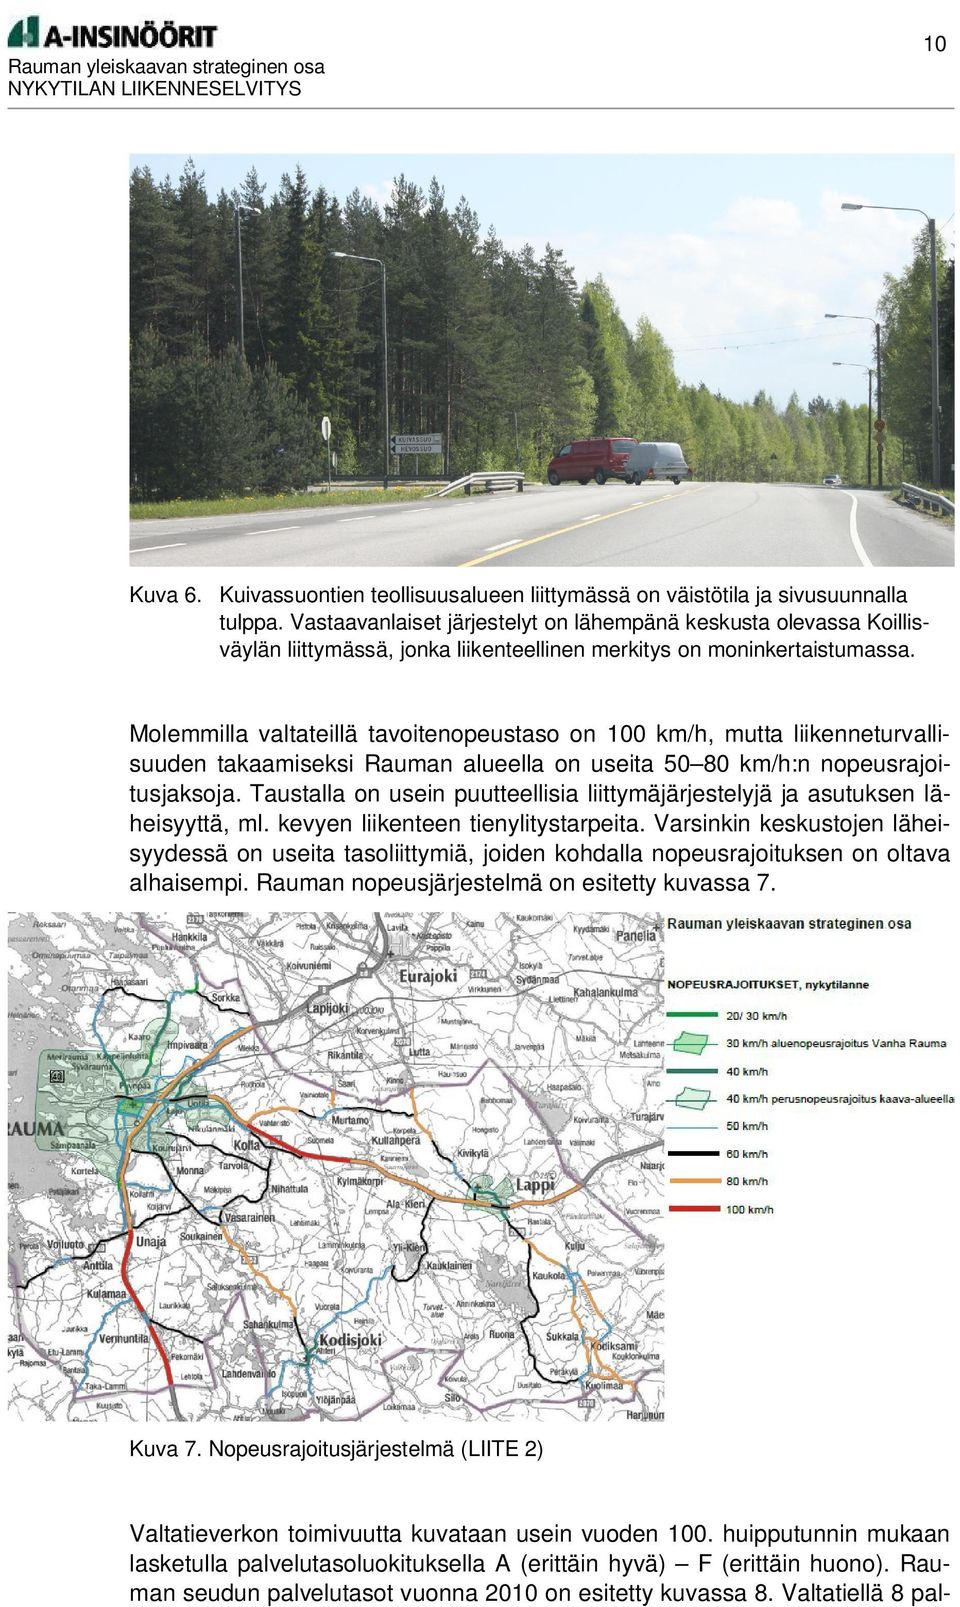 Molemmilla valtateillä tavoitenopeustaso on 100 km/h, mutta liikenneturvallisuuden takaamiseksi Rauman alueella on useita 50 80 km/h:n nopeusrajoitusjaksoja.